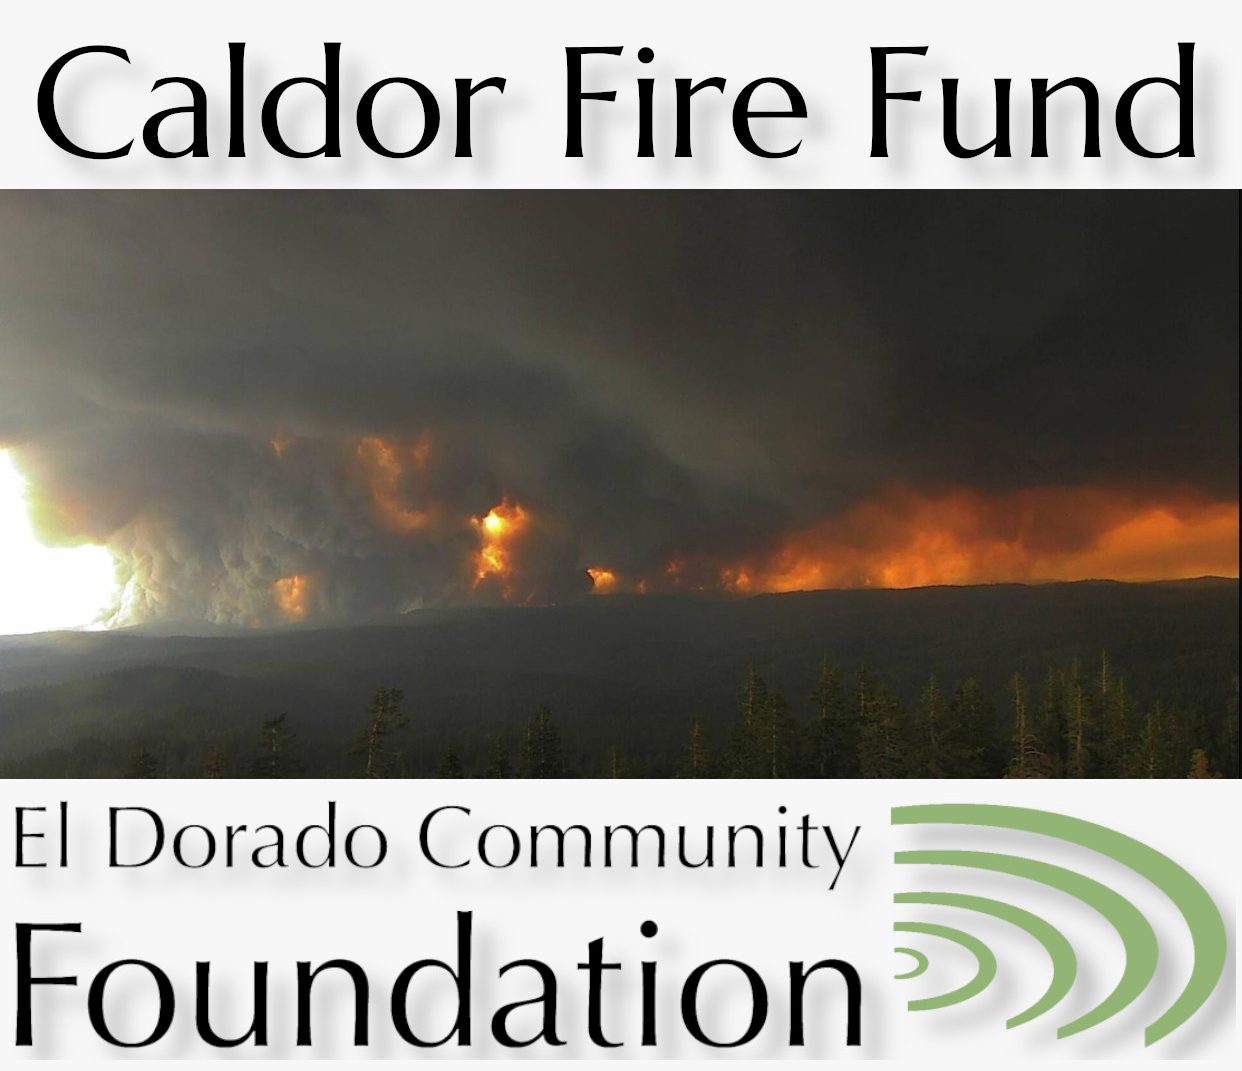 Caldor Fire Fund from El Dorado Community Foundation graphic.